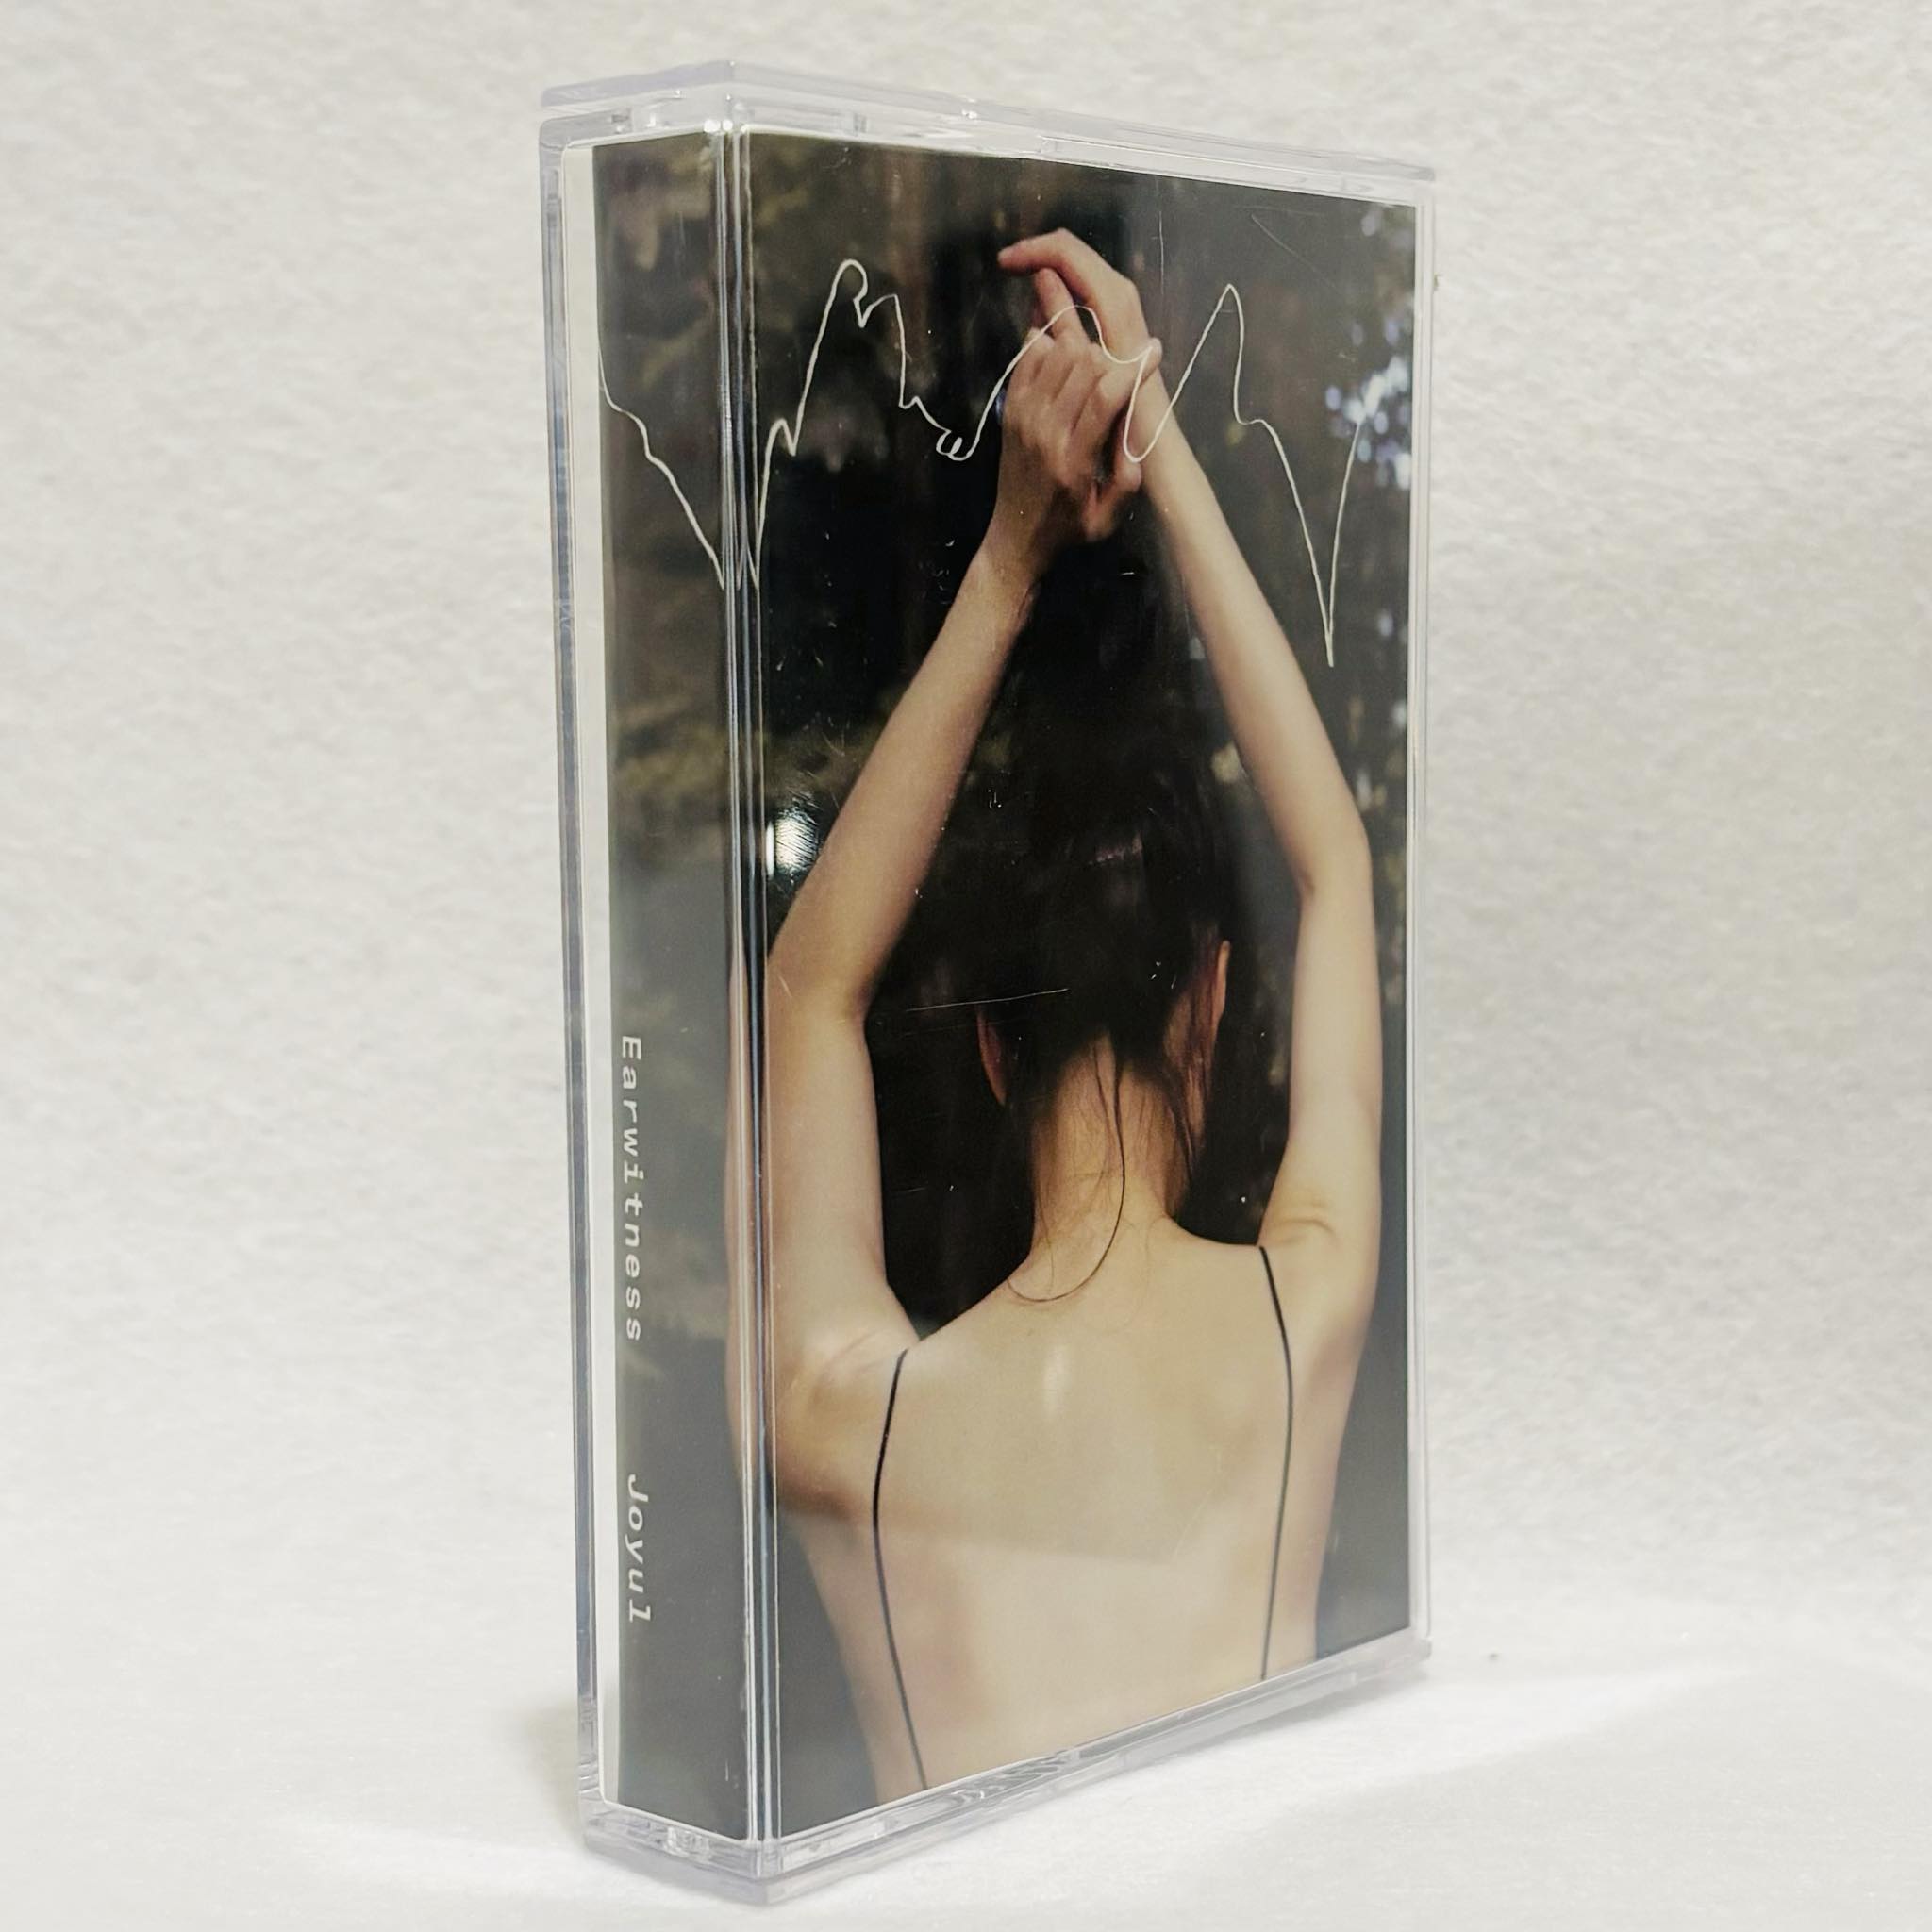 Joyul - Earwitness (cassette) : CASSETTE